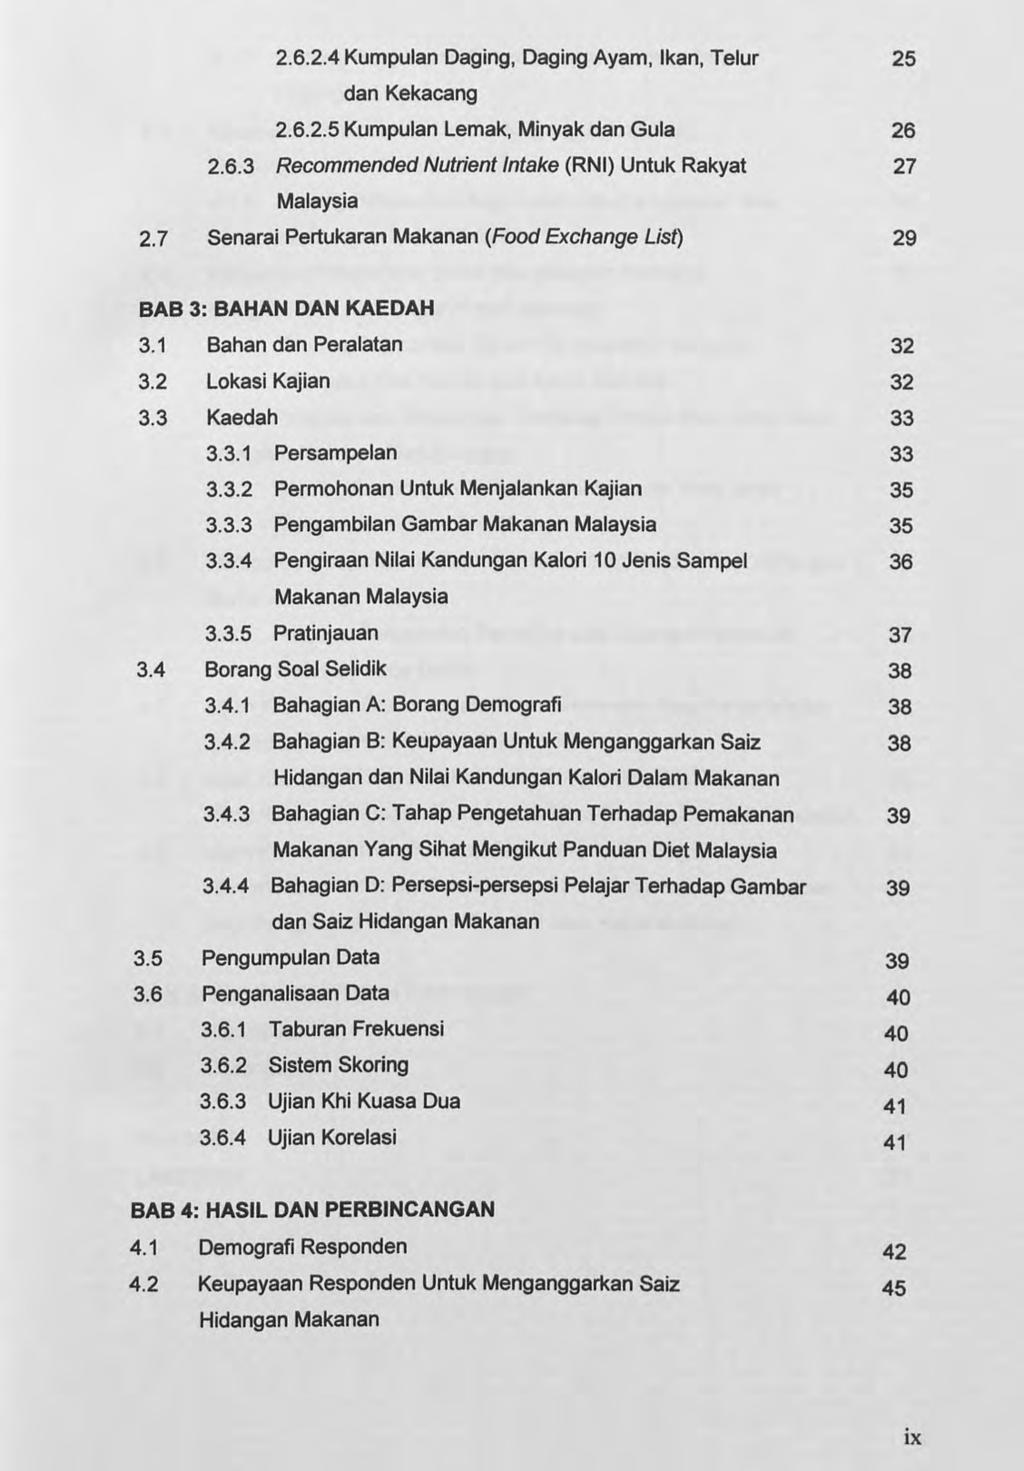 2.6.2.4 Kumpulan Daging, Daging Ayam, Ikan, Telur dan Kekacang 2.6.2.5 Kumpulan Lemak, Minyak dan Gula 2.6.3 Recommended Nutrient Intake (RNI) Untuk Rakyat Malaysia 2.